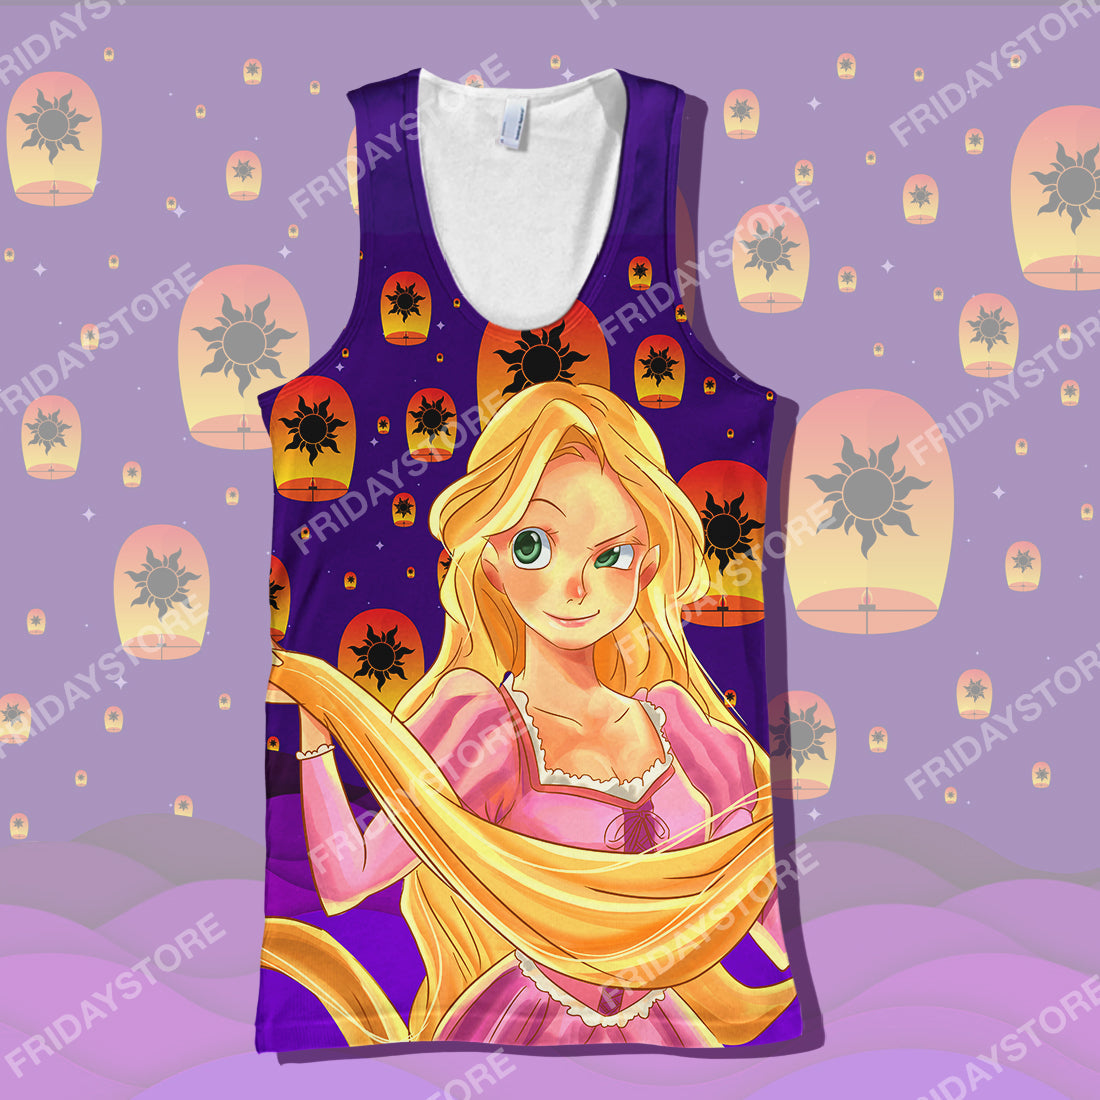 Unifinz DN Rapunzel T-shirt Princess Tangled Rapunzel Couple Silhouette T-shirt DN Tangled Apparel DN Rapunzel Hoodie Sweater Tank 2025